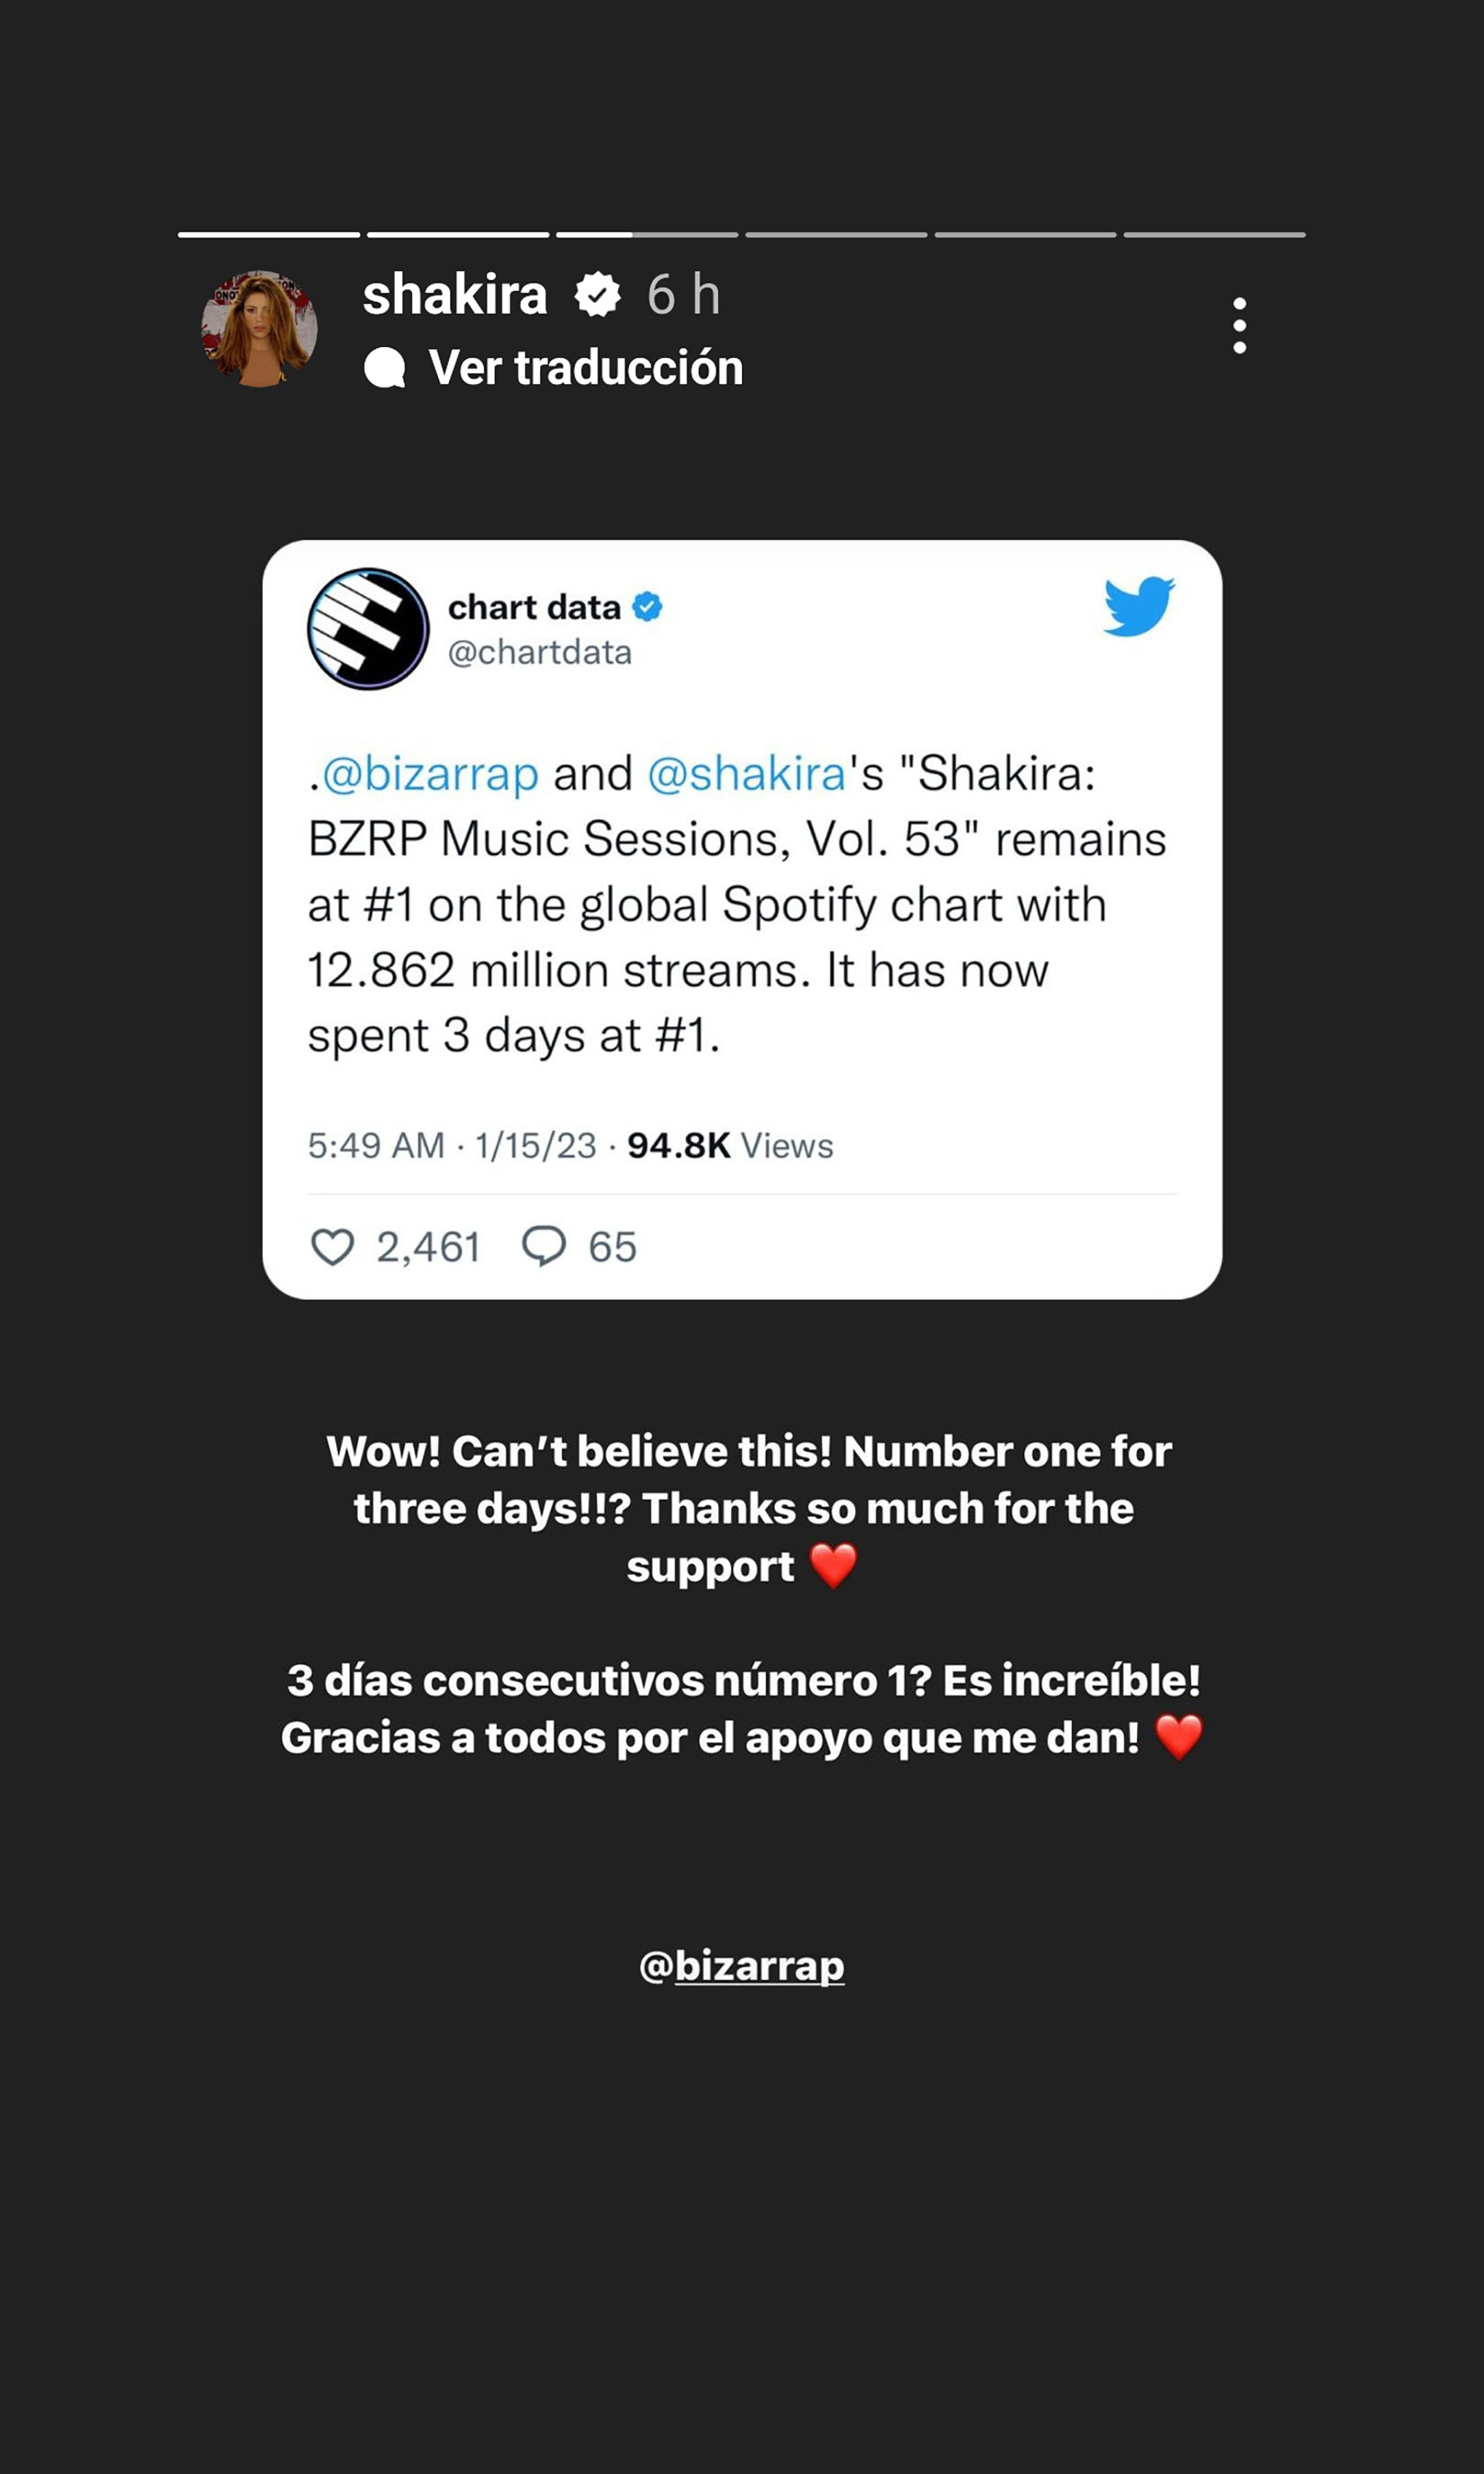 Los datos que compartió Shakira en Instagram